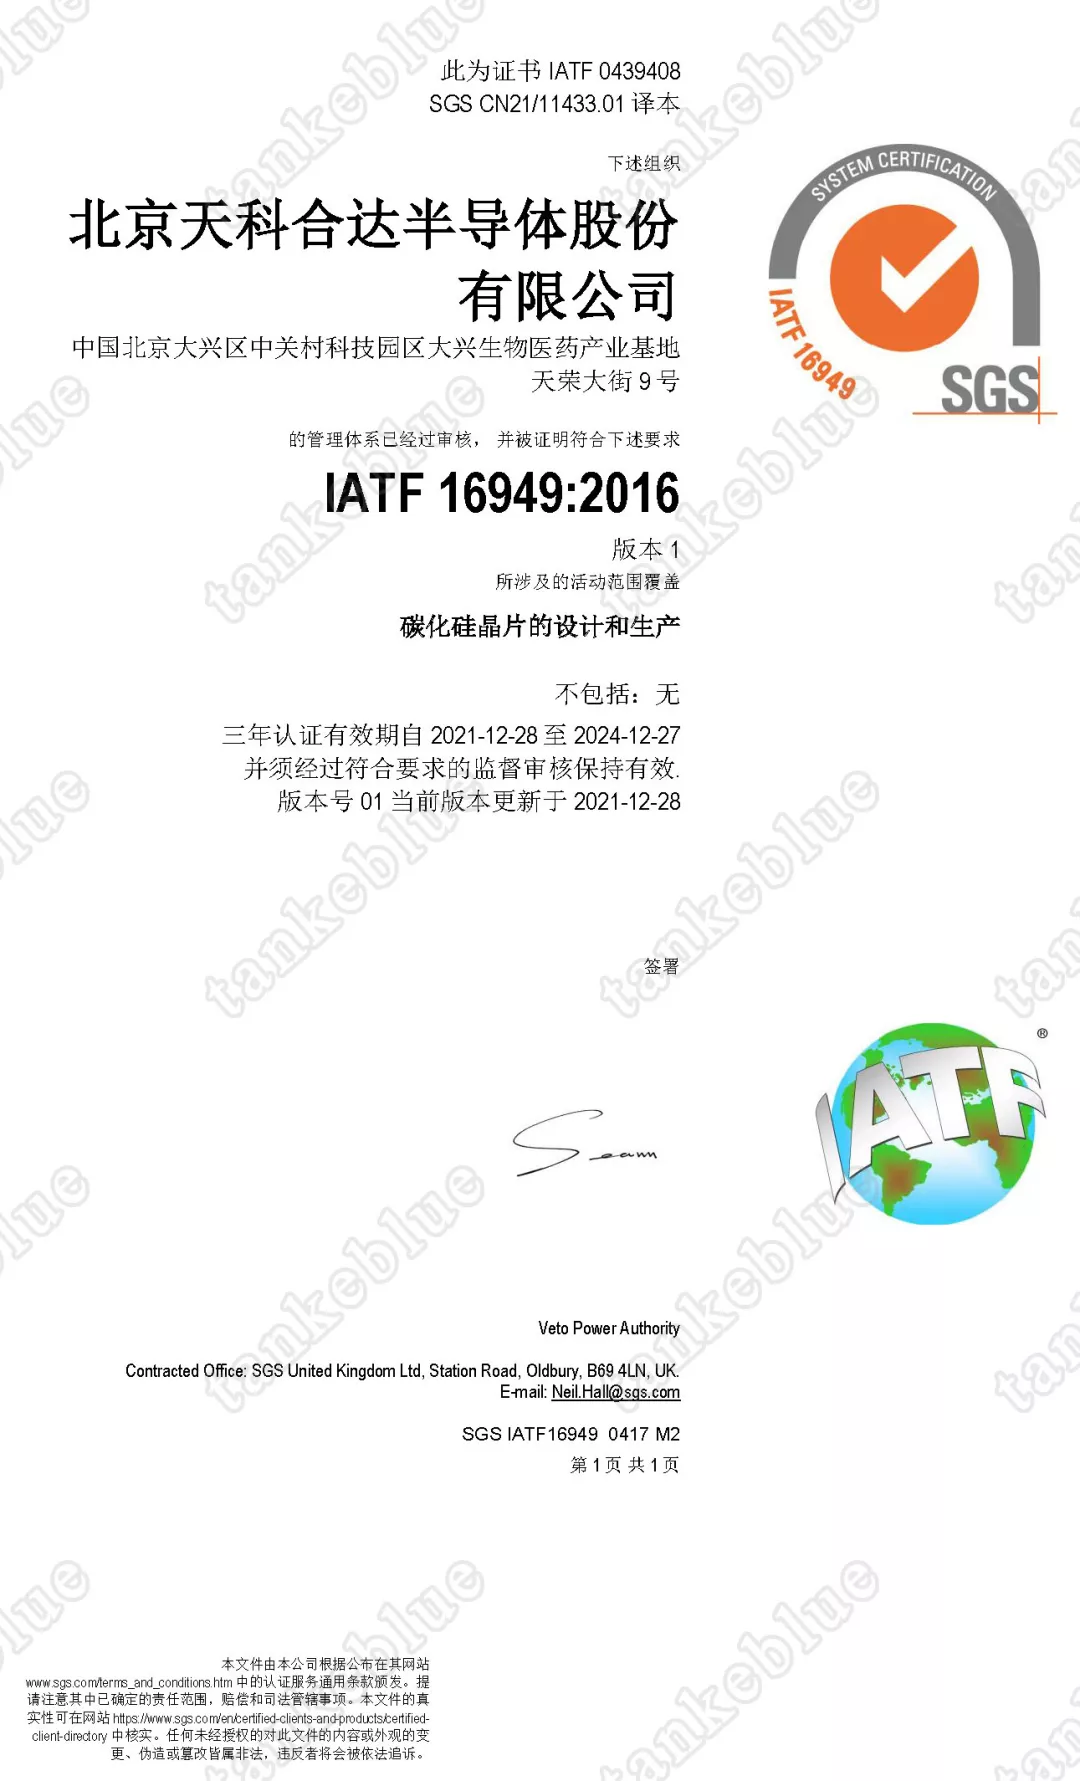 「成员风采」天科合达顺利通过IATF16949质量管理体系认证